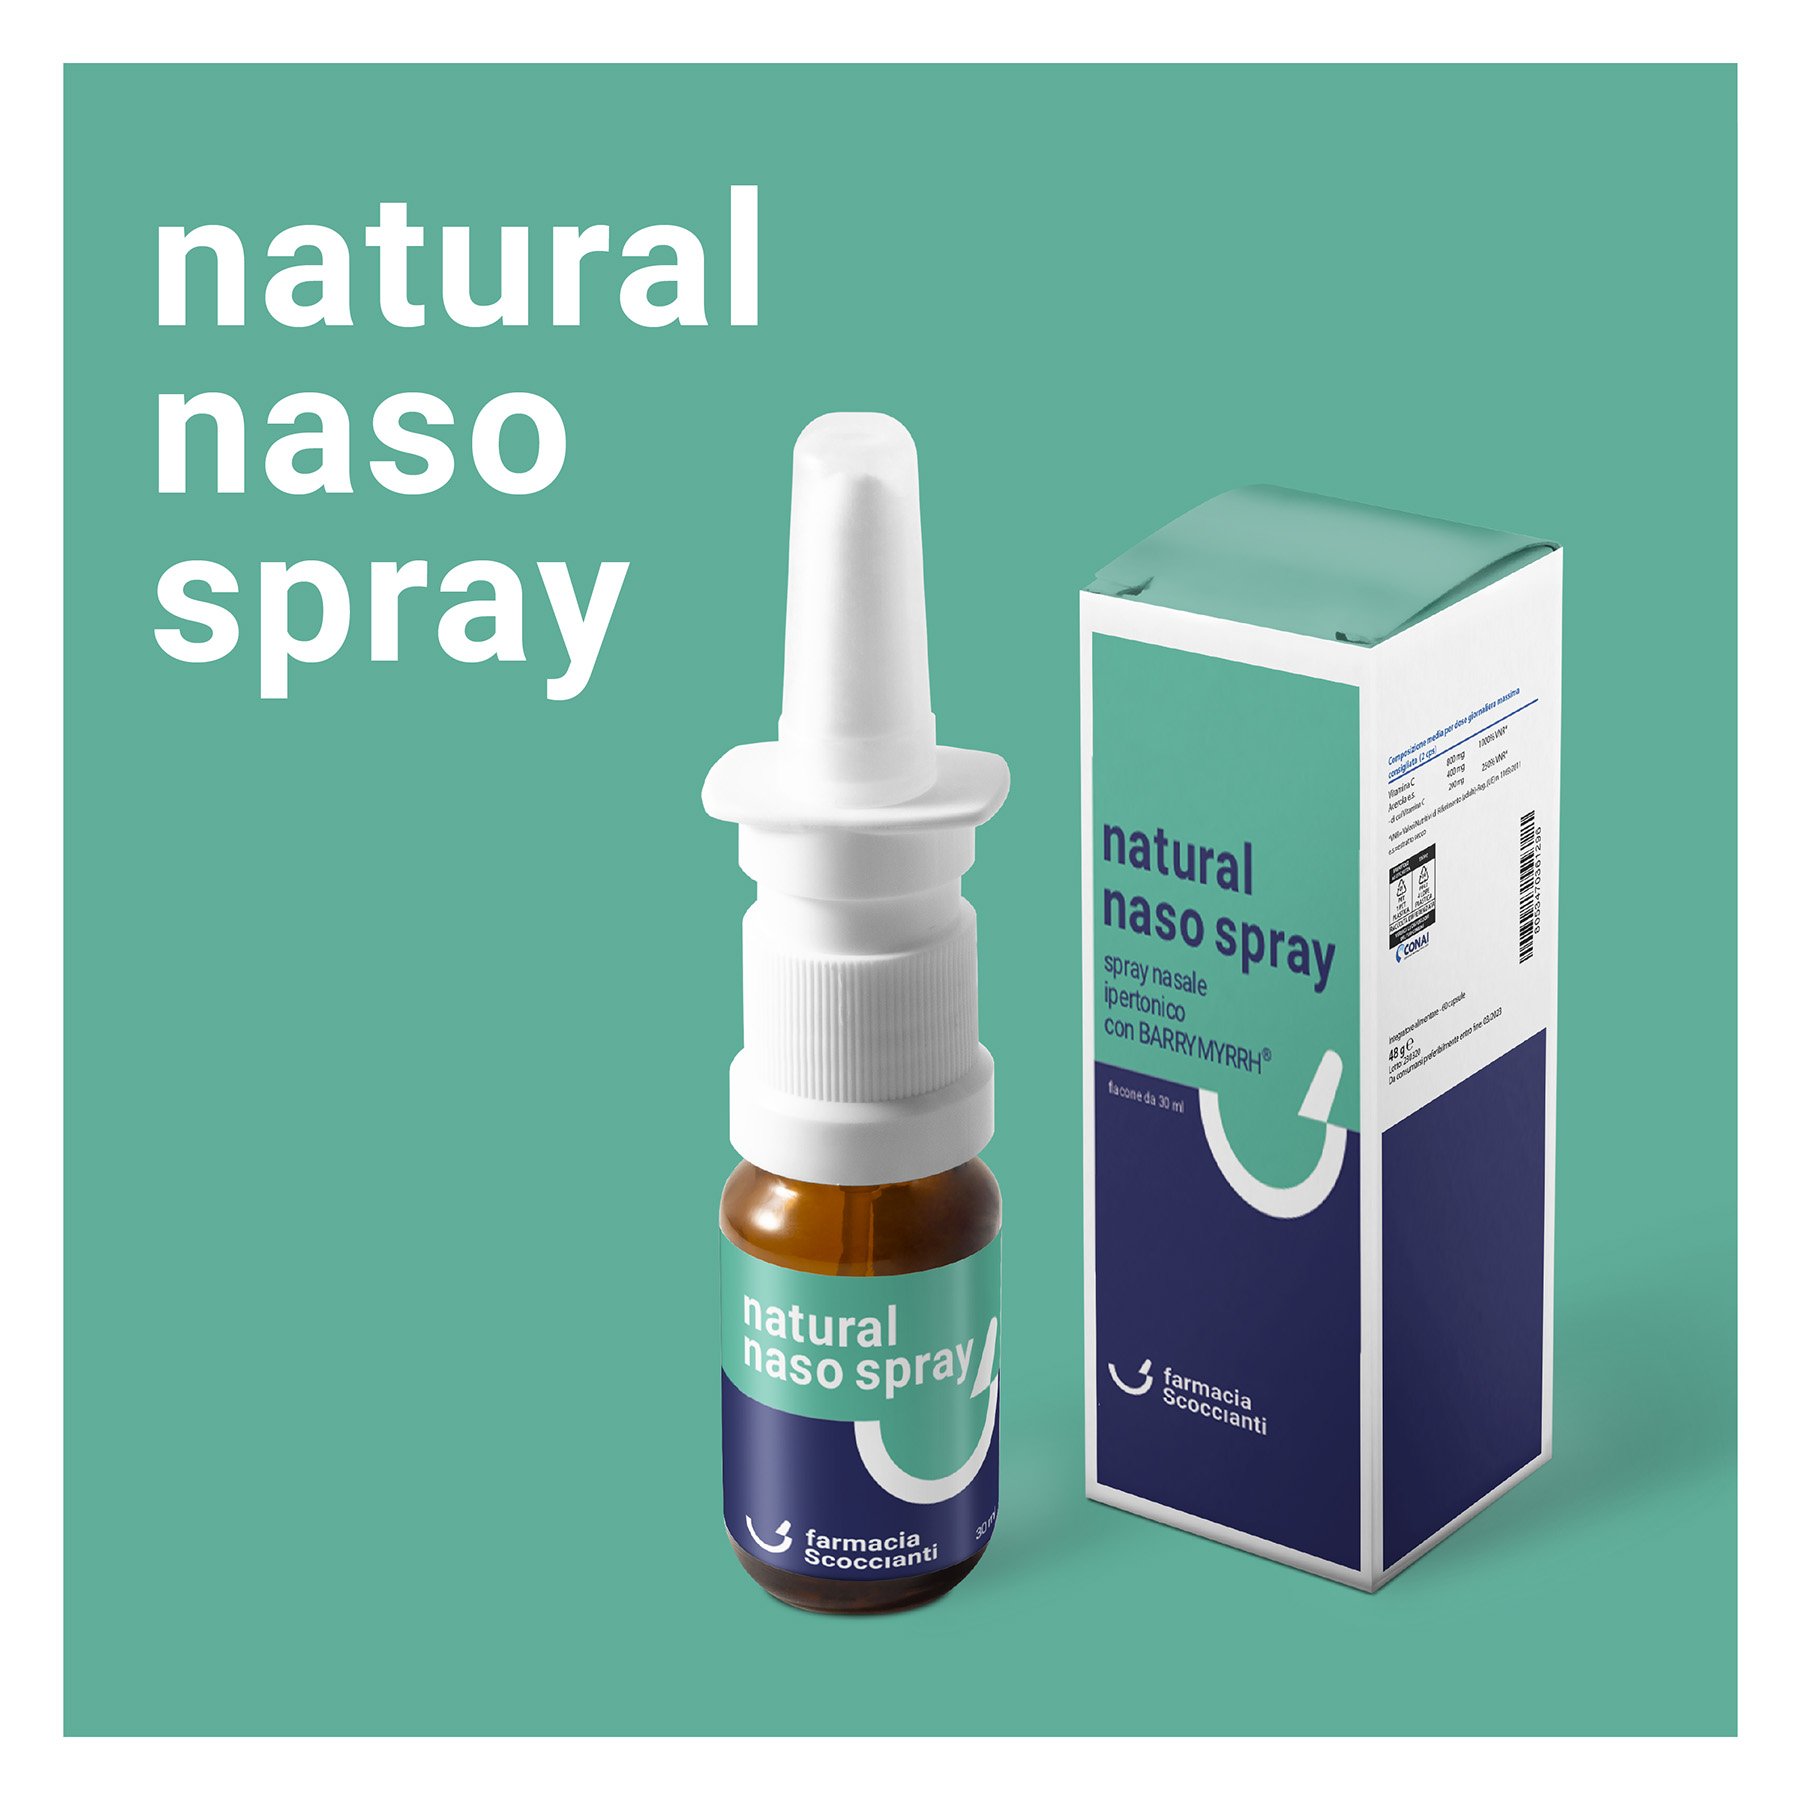 Natural naso spray